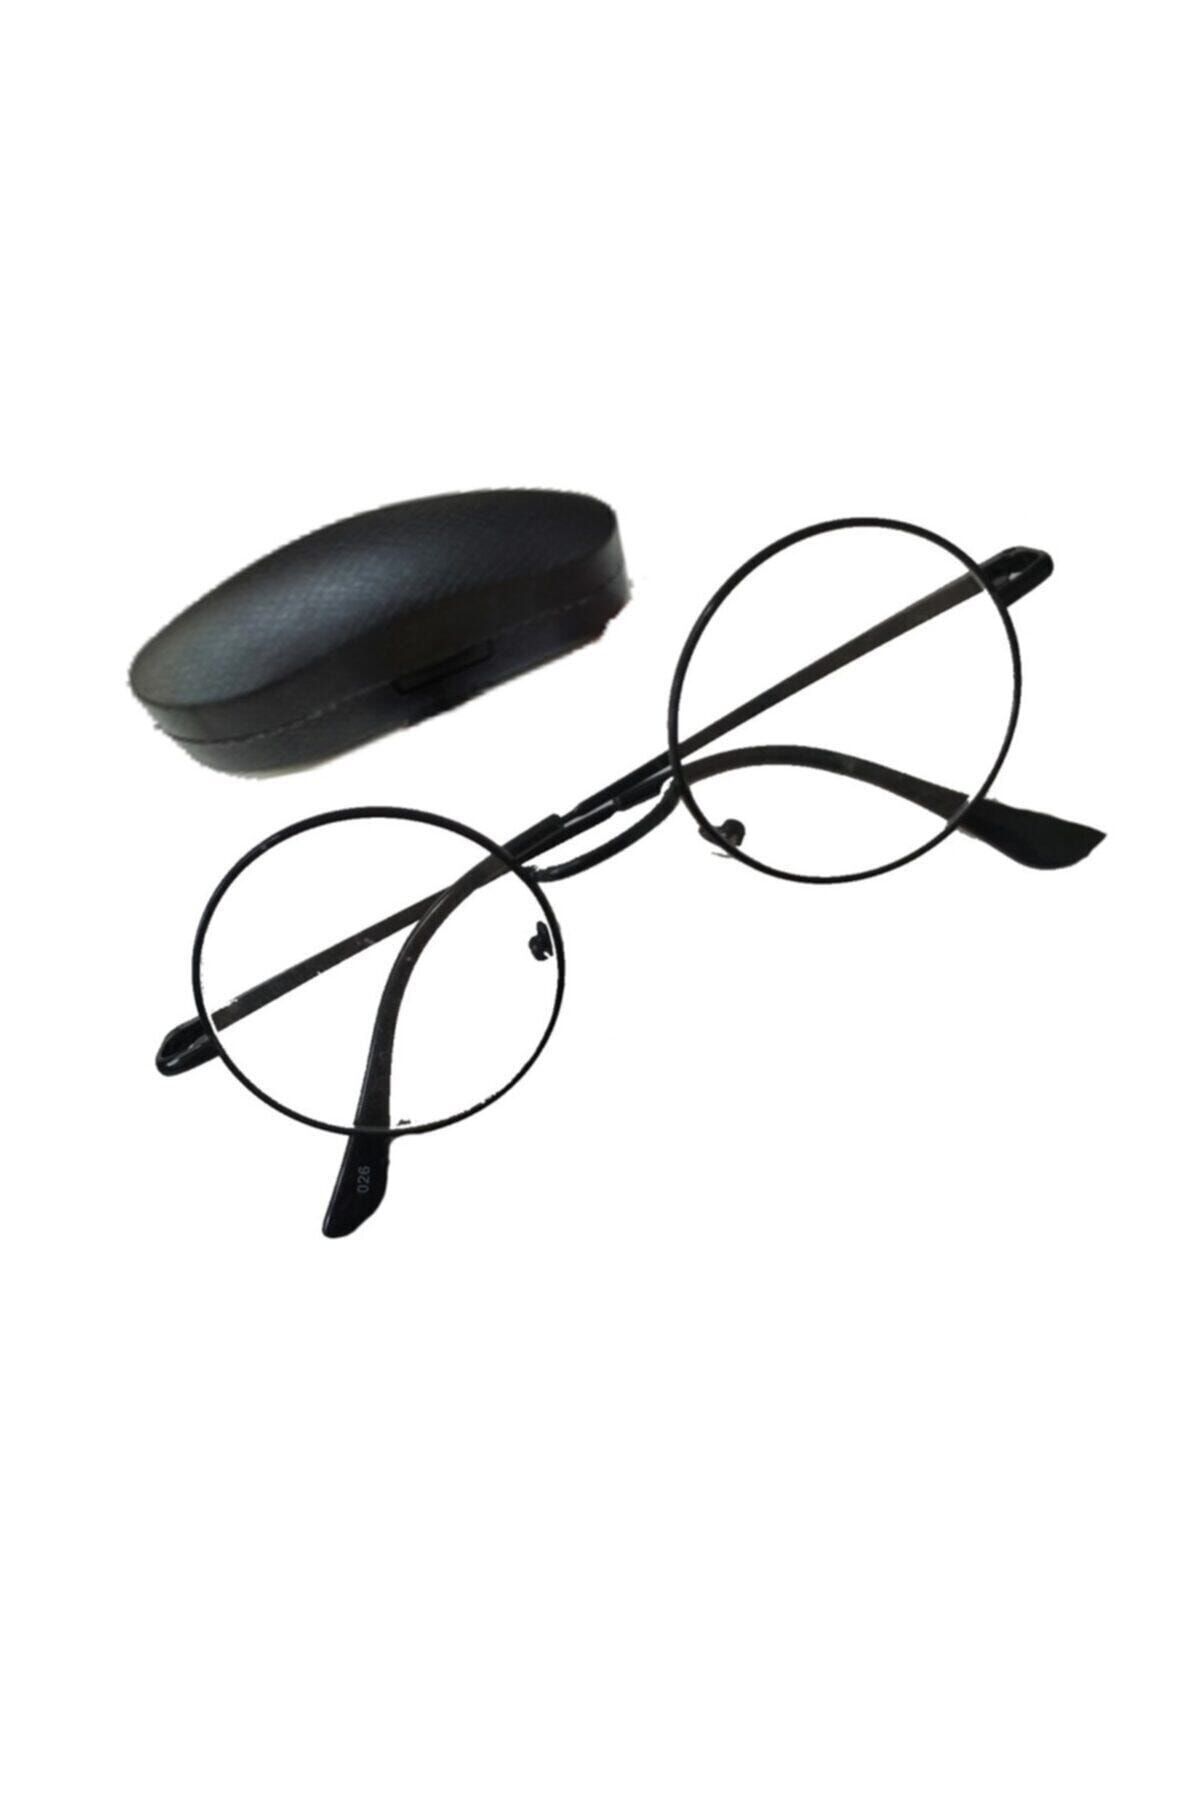 ADS Yuvarlak Model Gözlük - Harry Potter Gözlüğü